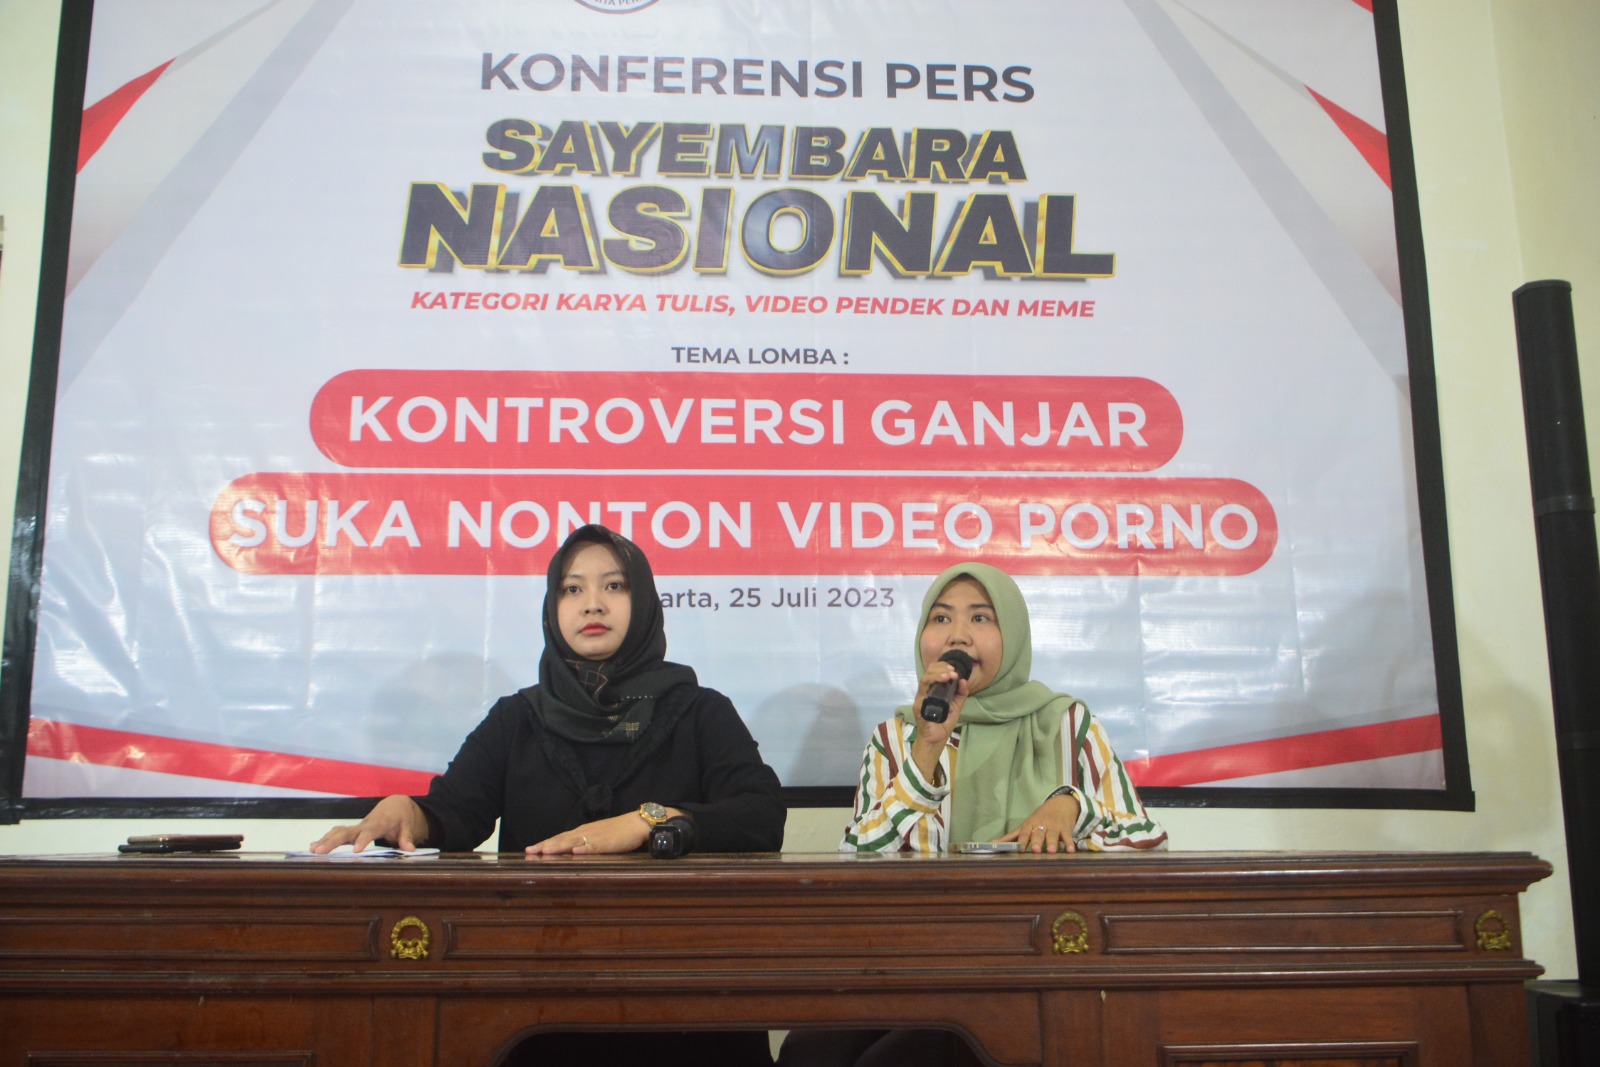 PP PERISAI akan menggelar Sayembara Nasional (karya tulis, video dan meme) bertema "Kontroversi Ganjar Pranowo soal video porno" (Ashar/SinPo.id)